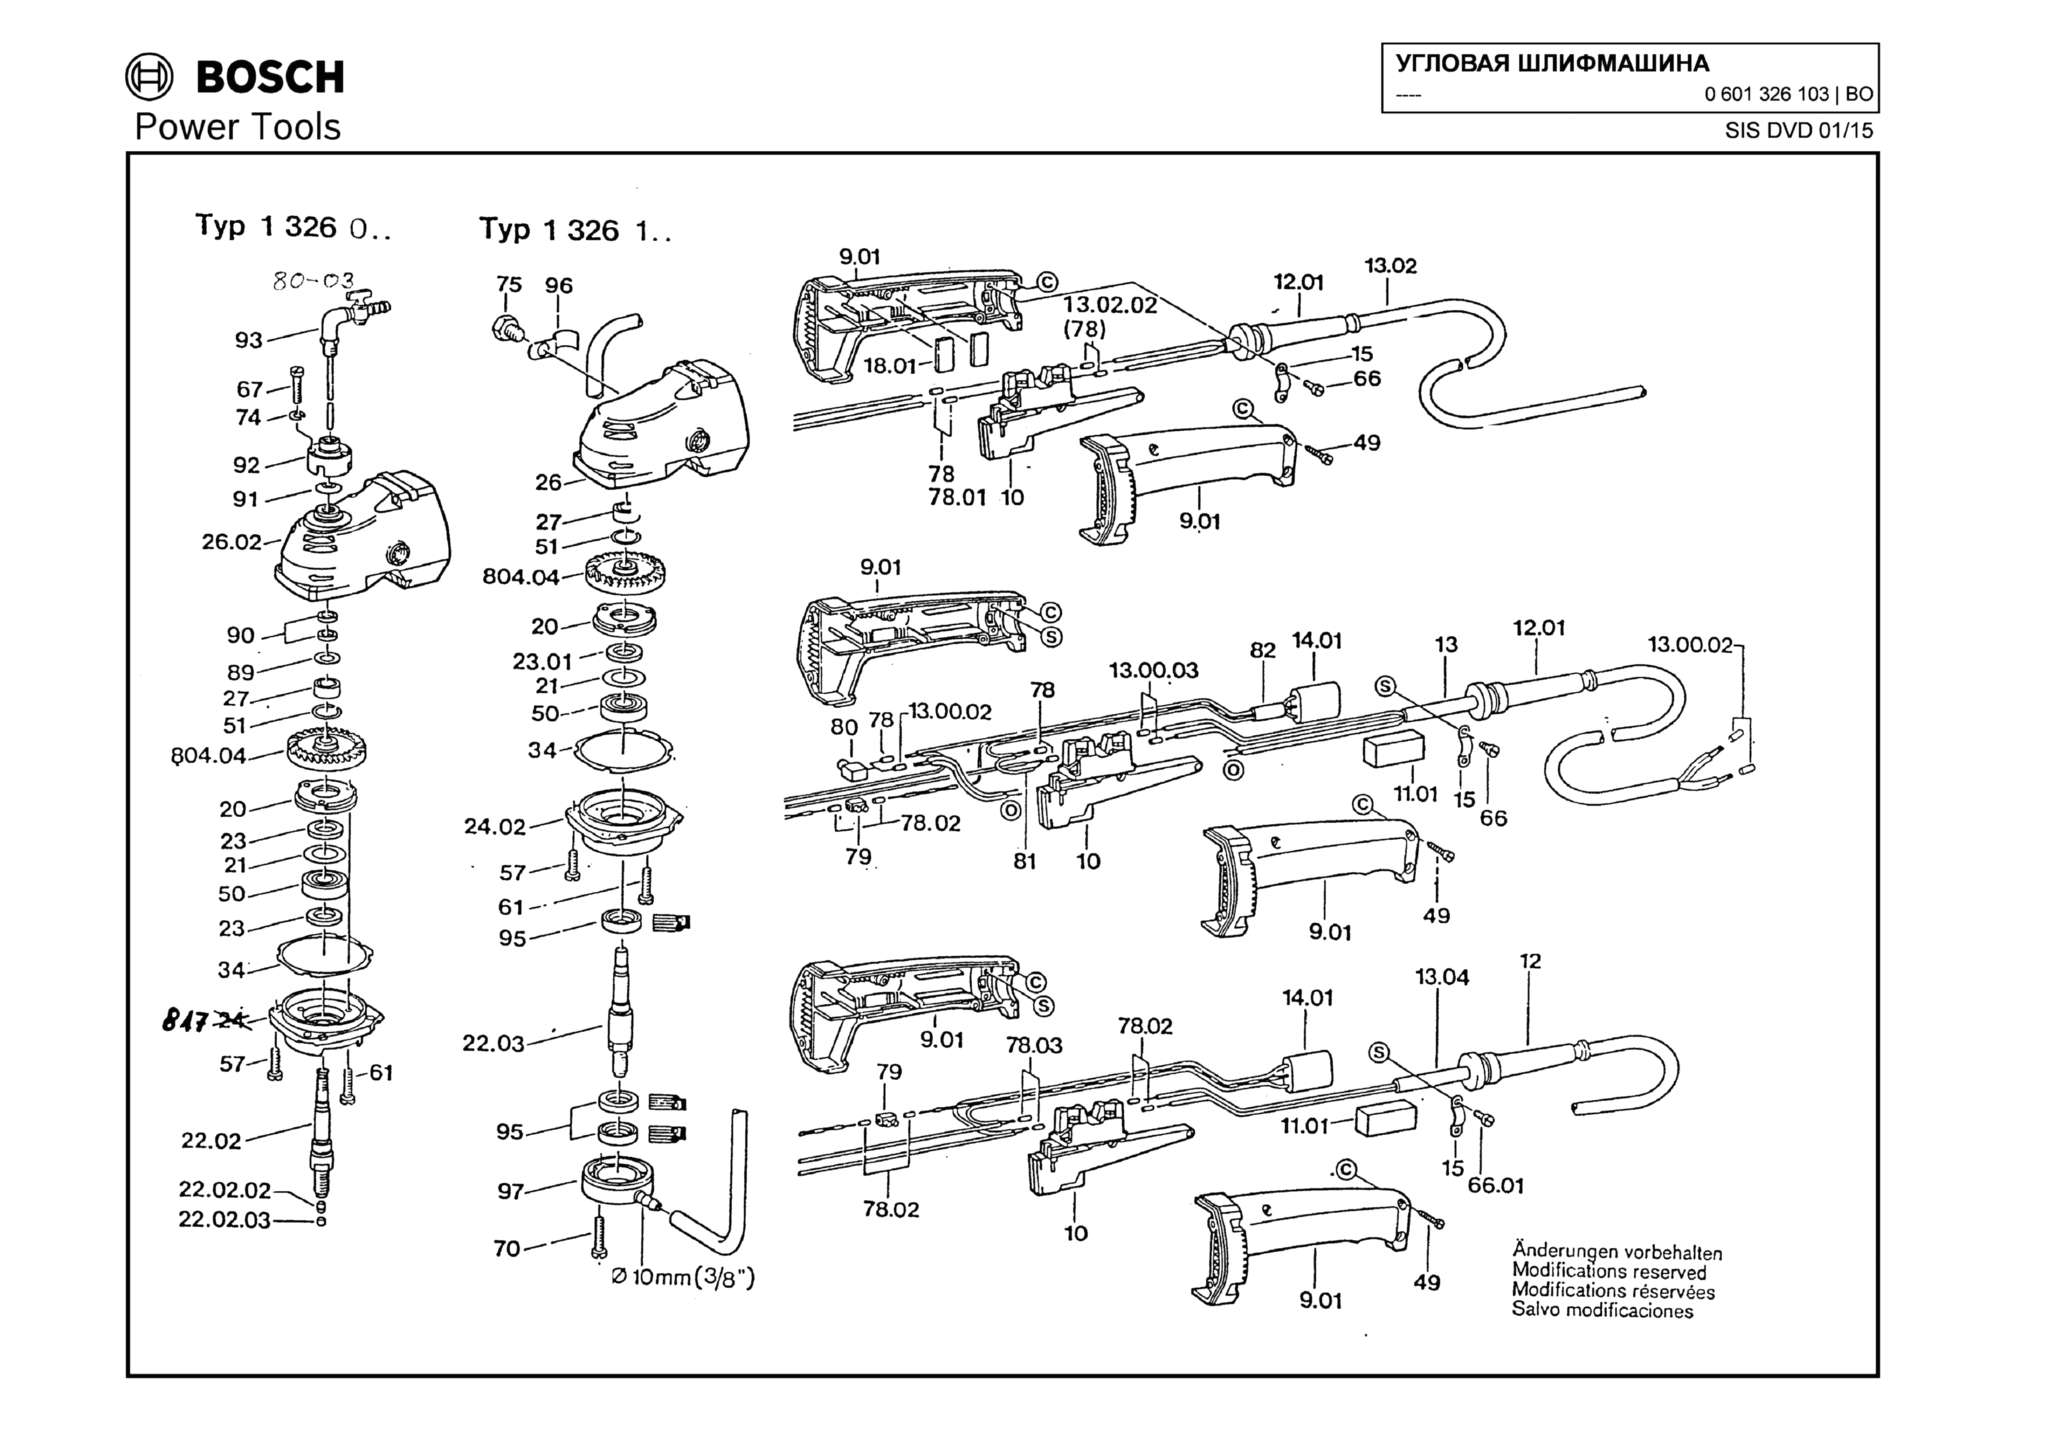 Запчасти, схема и деталировка Bosch (ТИП 0601326103)